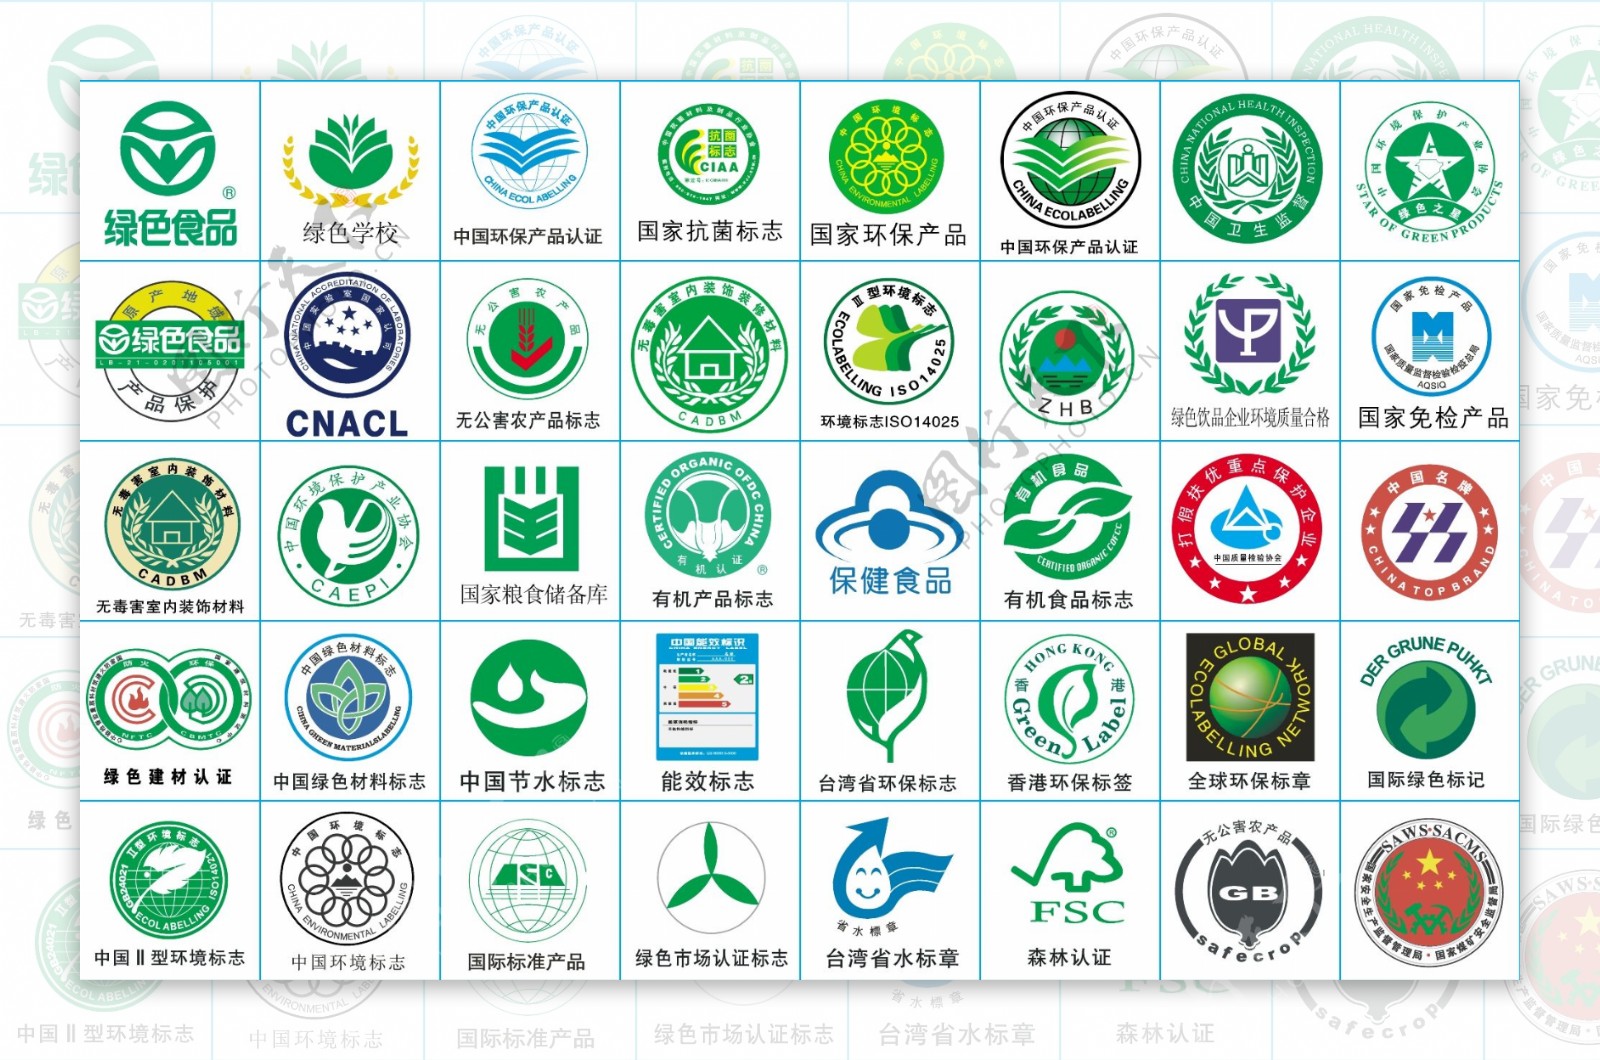 国家认证标志大全绿色标志免检标识图片素材国家认证标志矢量认证标志AI